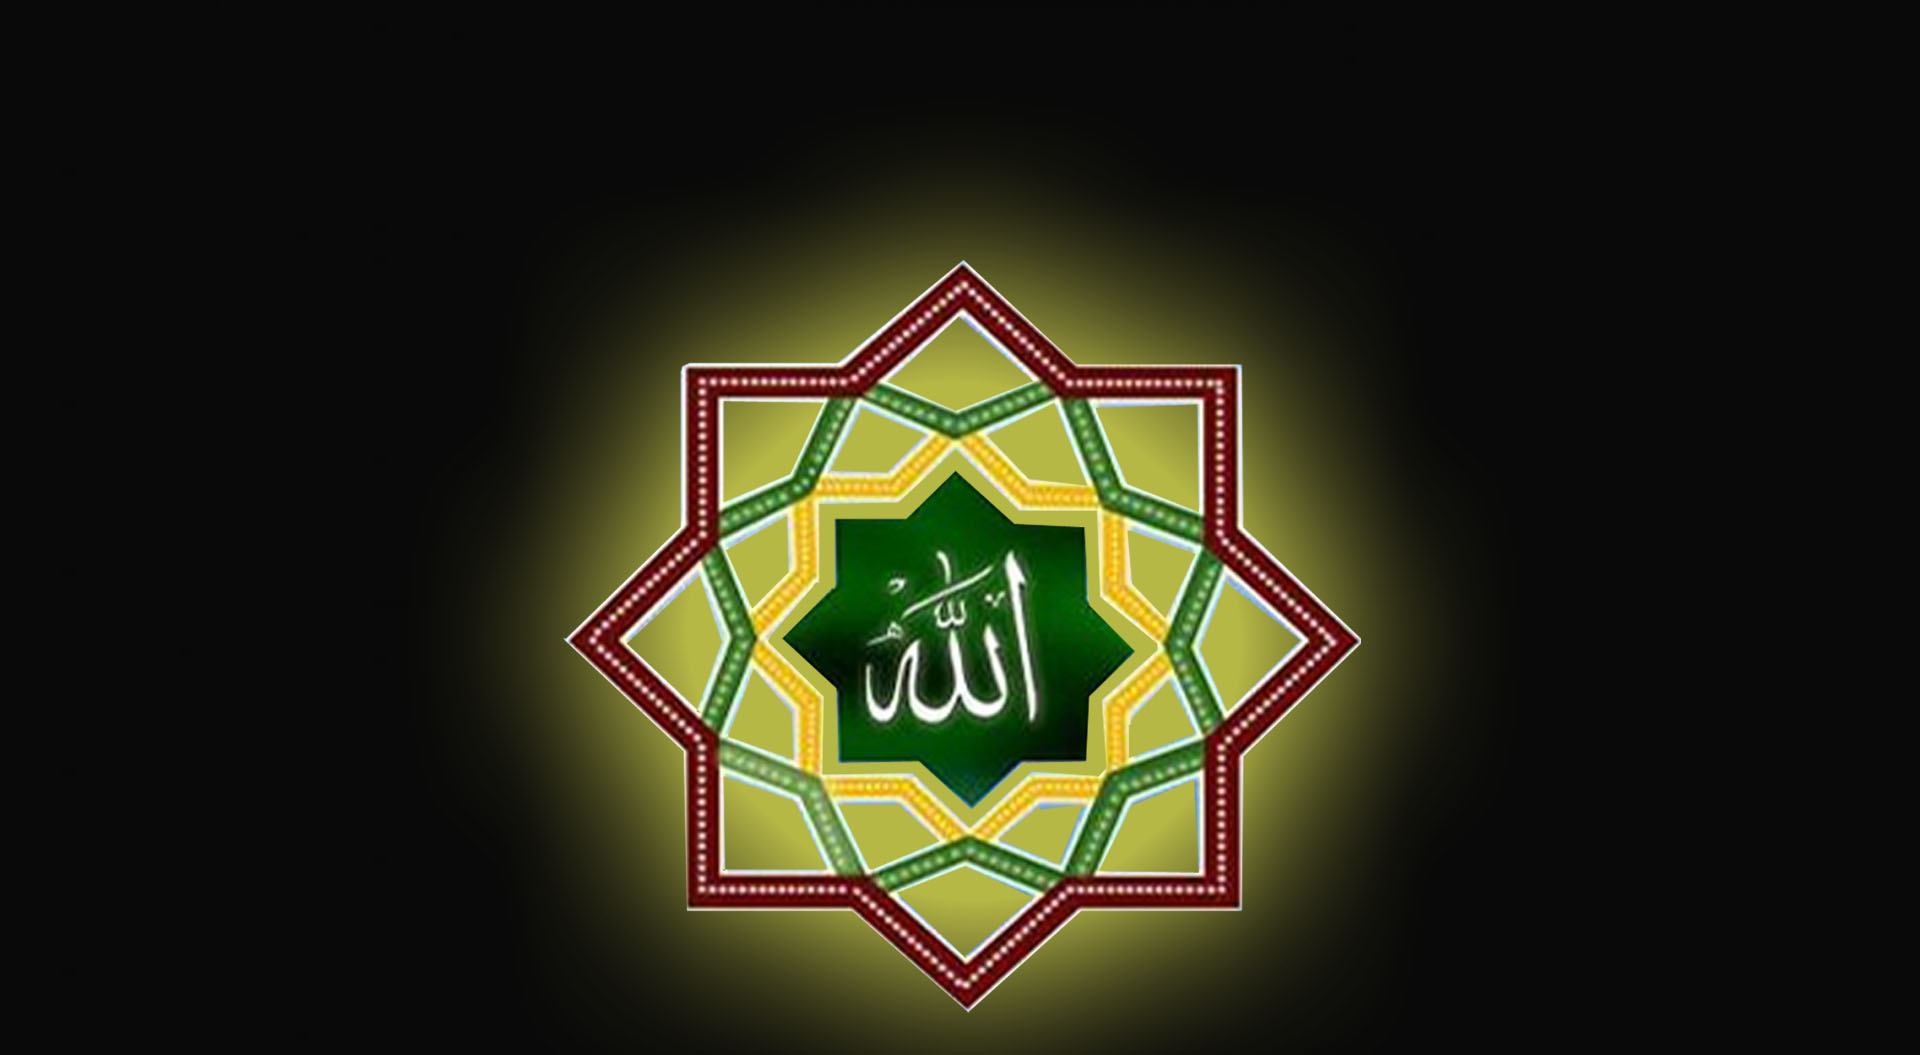 MDS Pusat Adakan Khatam Al Quran 30 Juzz Dalam Waktu 1 Jam